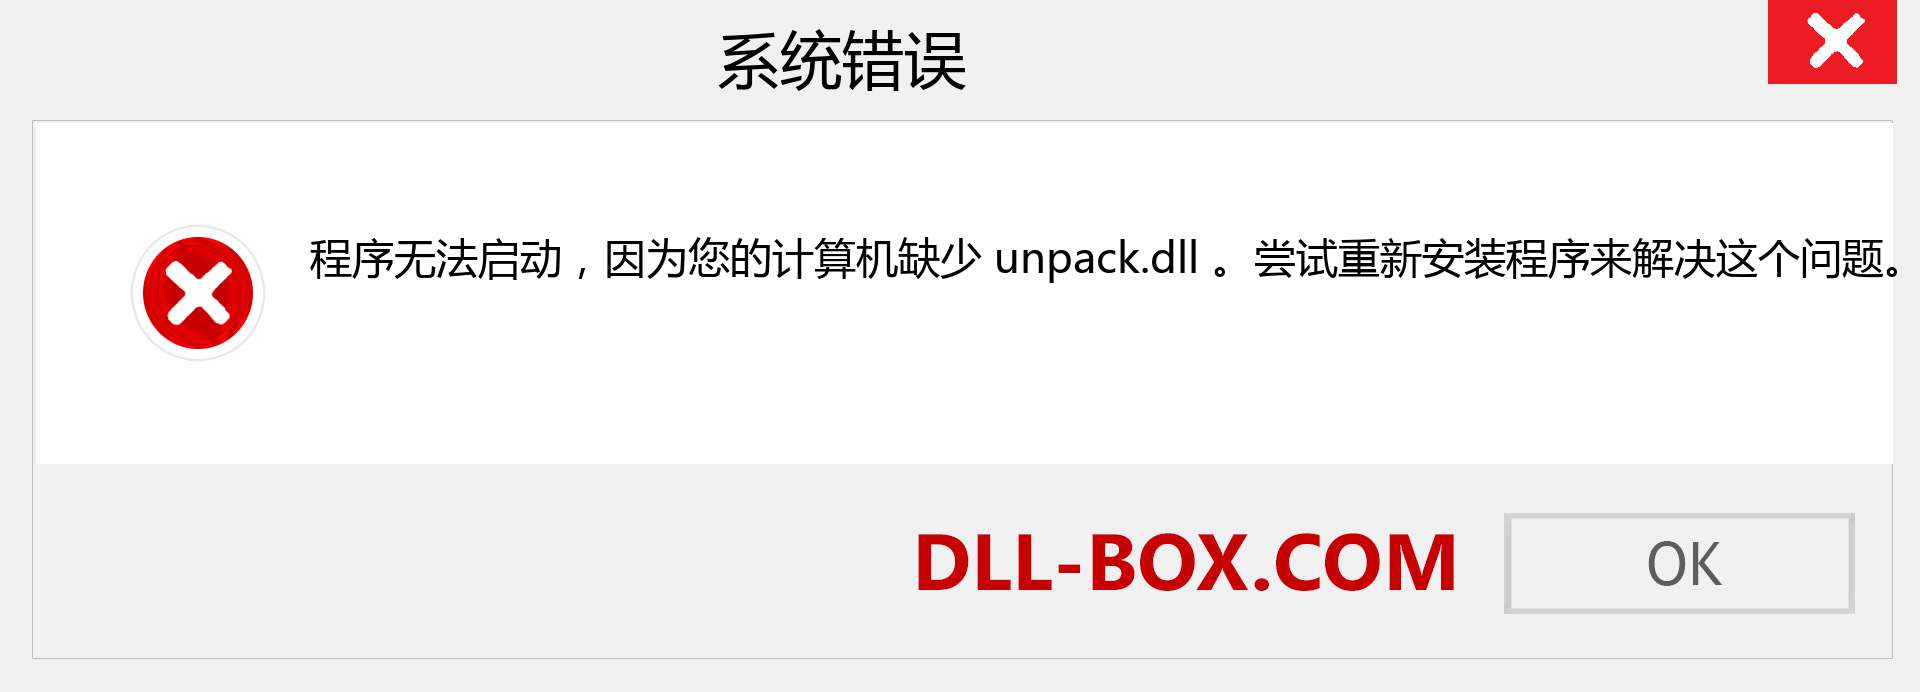 unpack.dll 文件丢失？。 适用于 Windows 7、8、10 的下载 - 修复 Windows、照片、图像上的 unpack dll 丢失错误